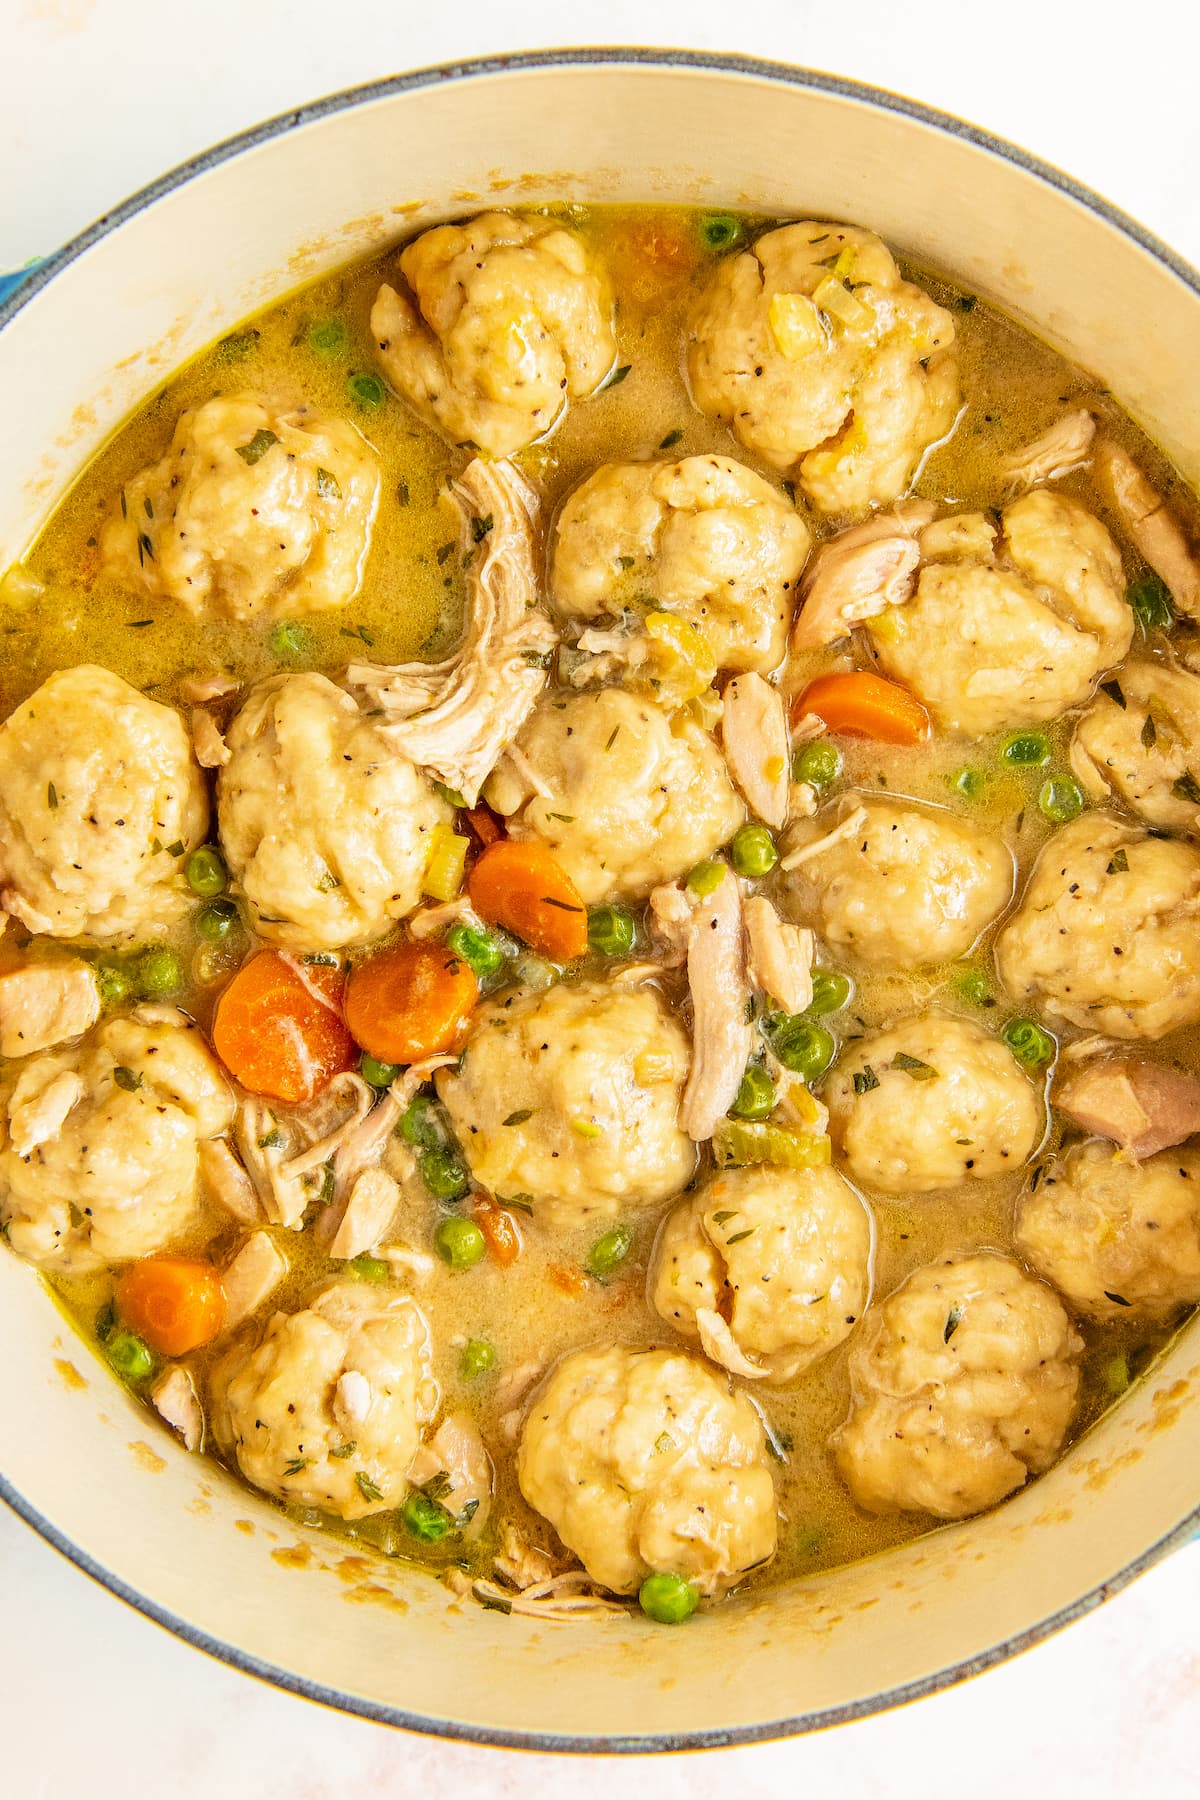 A pot full of homemade chicken and dumplings